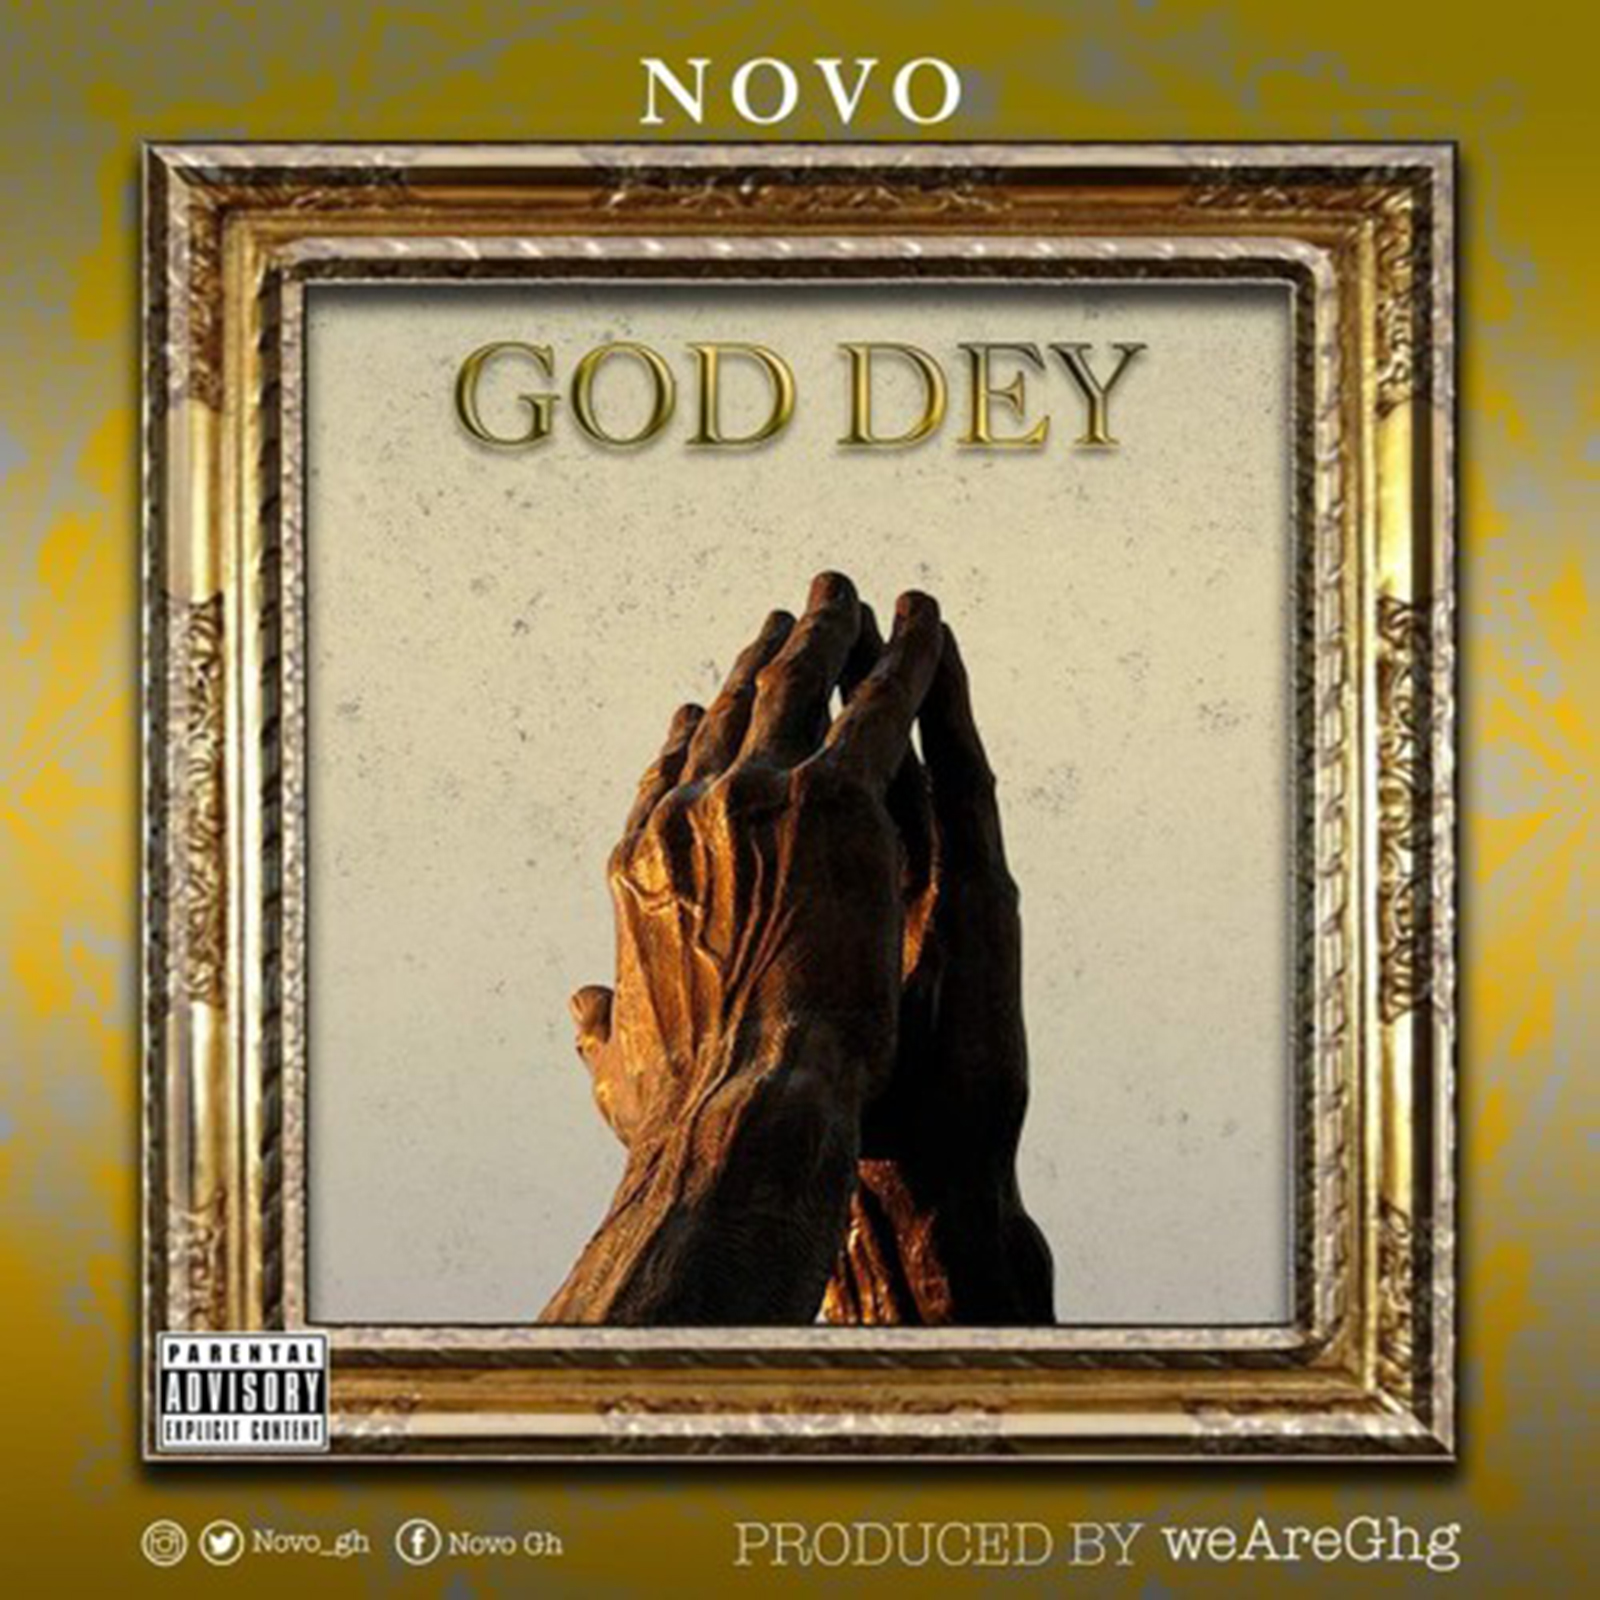 God Dey by Novo